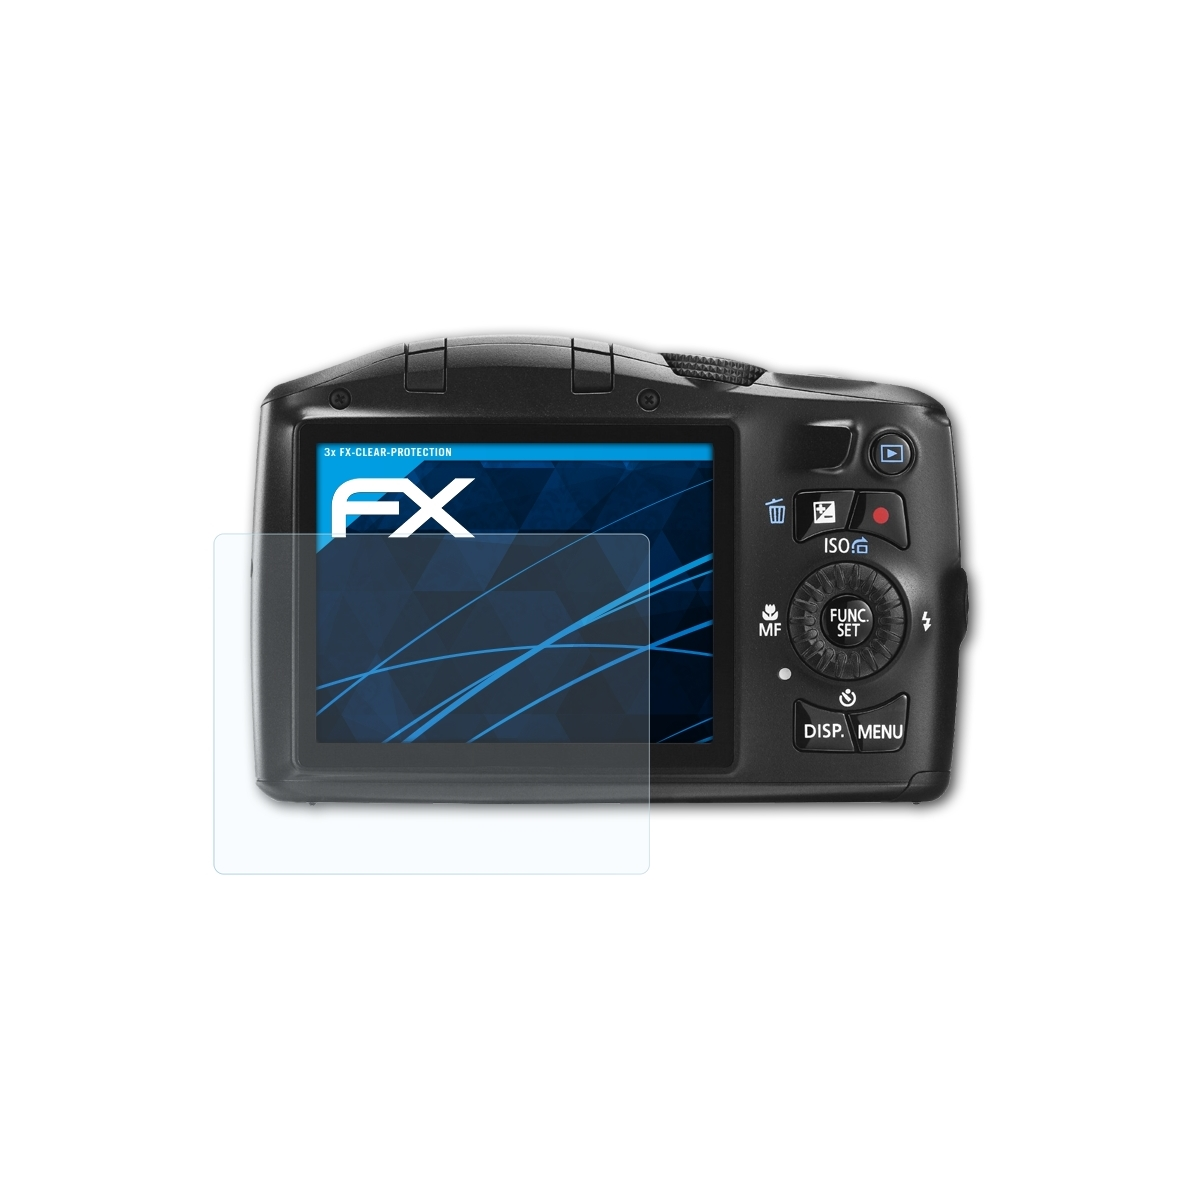 FX-Clear ATFOLIX PowerShot Canon 3x IS) Displayschutz(für SX150